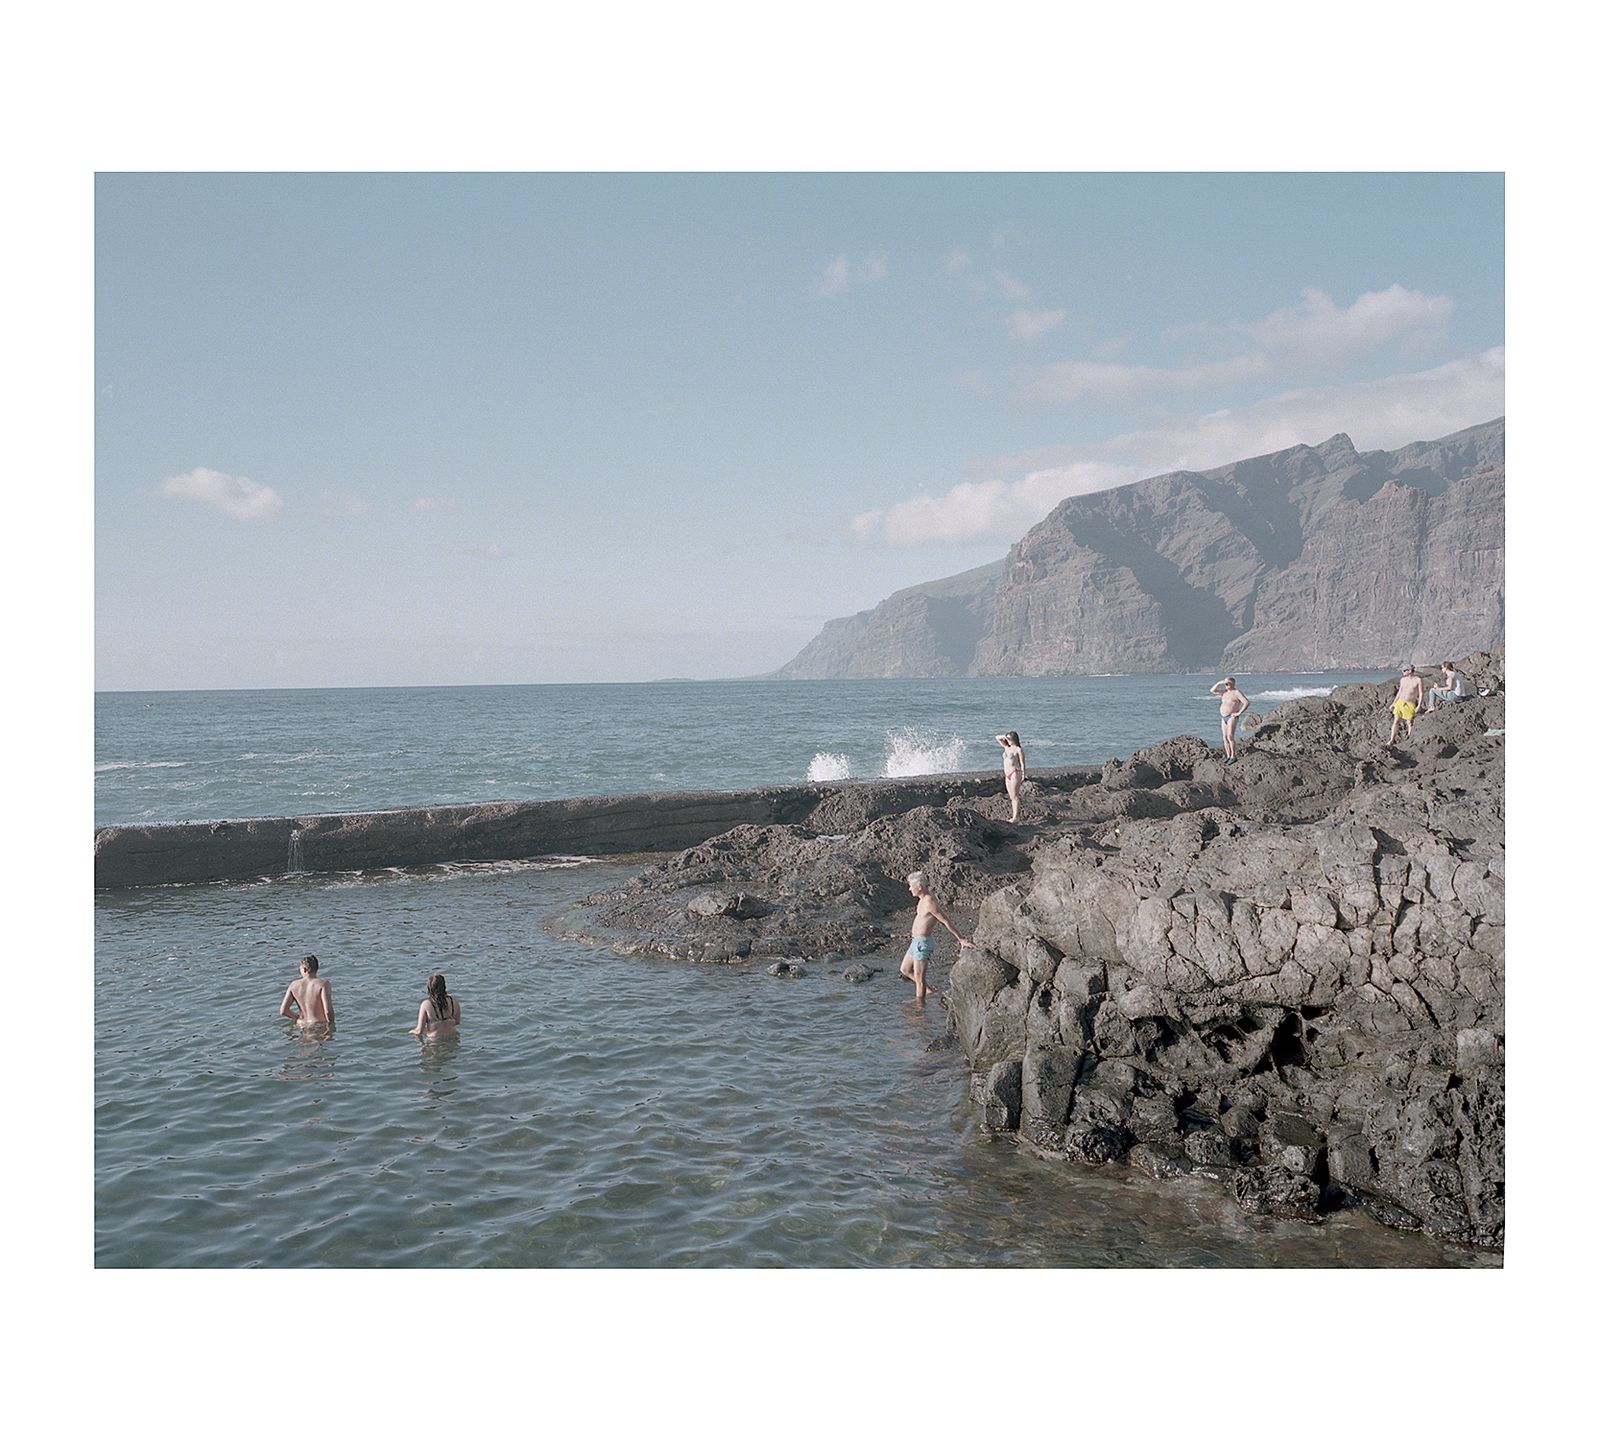 © Diego Drudi - Tenerife, Canary Islands. 2020